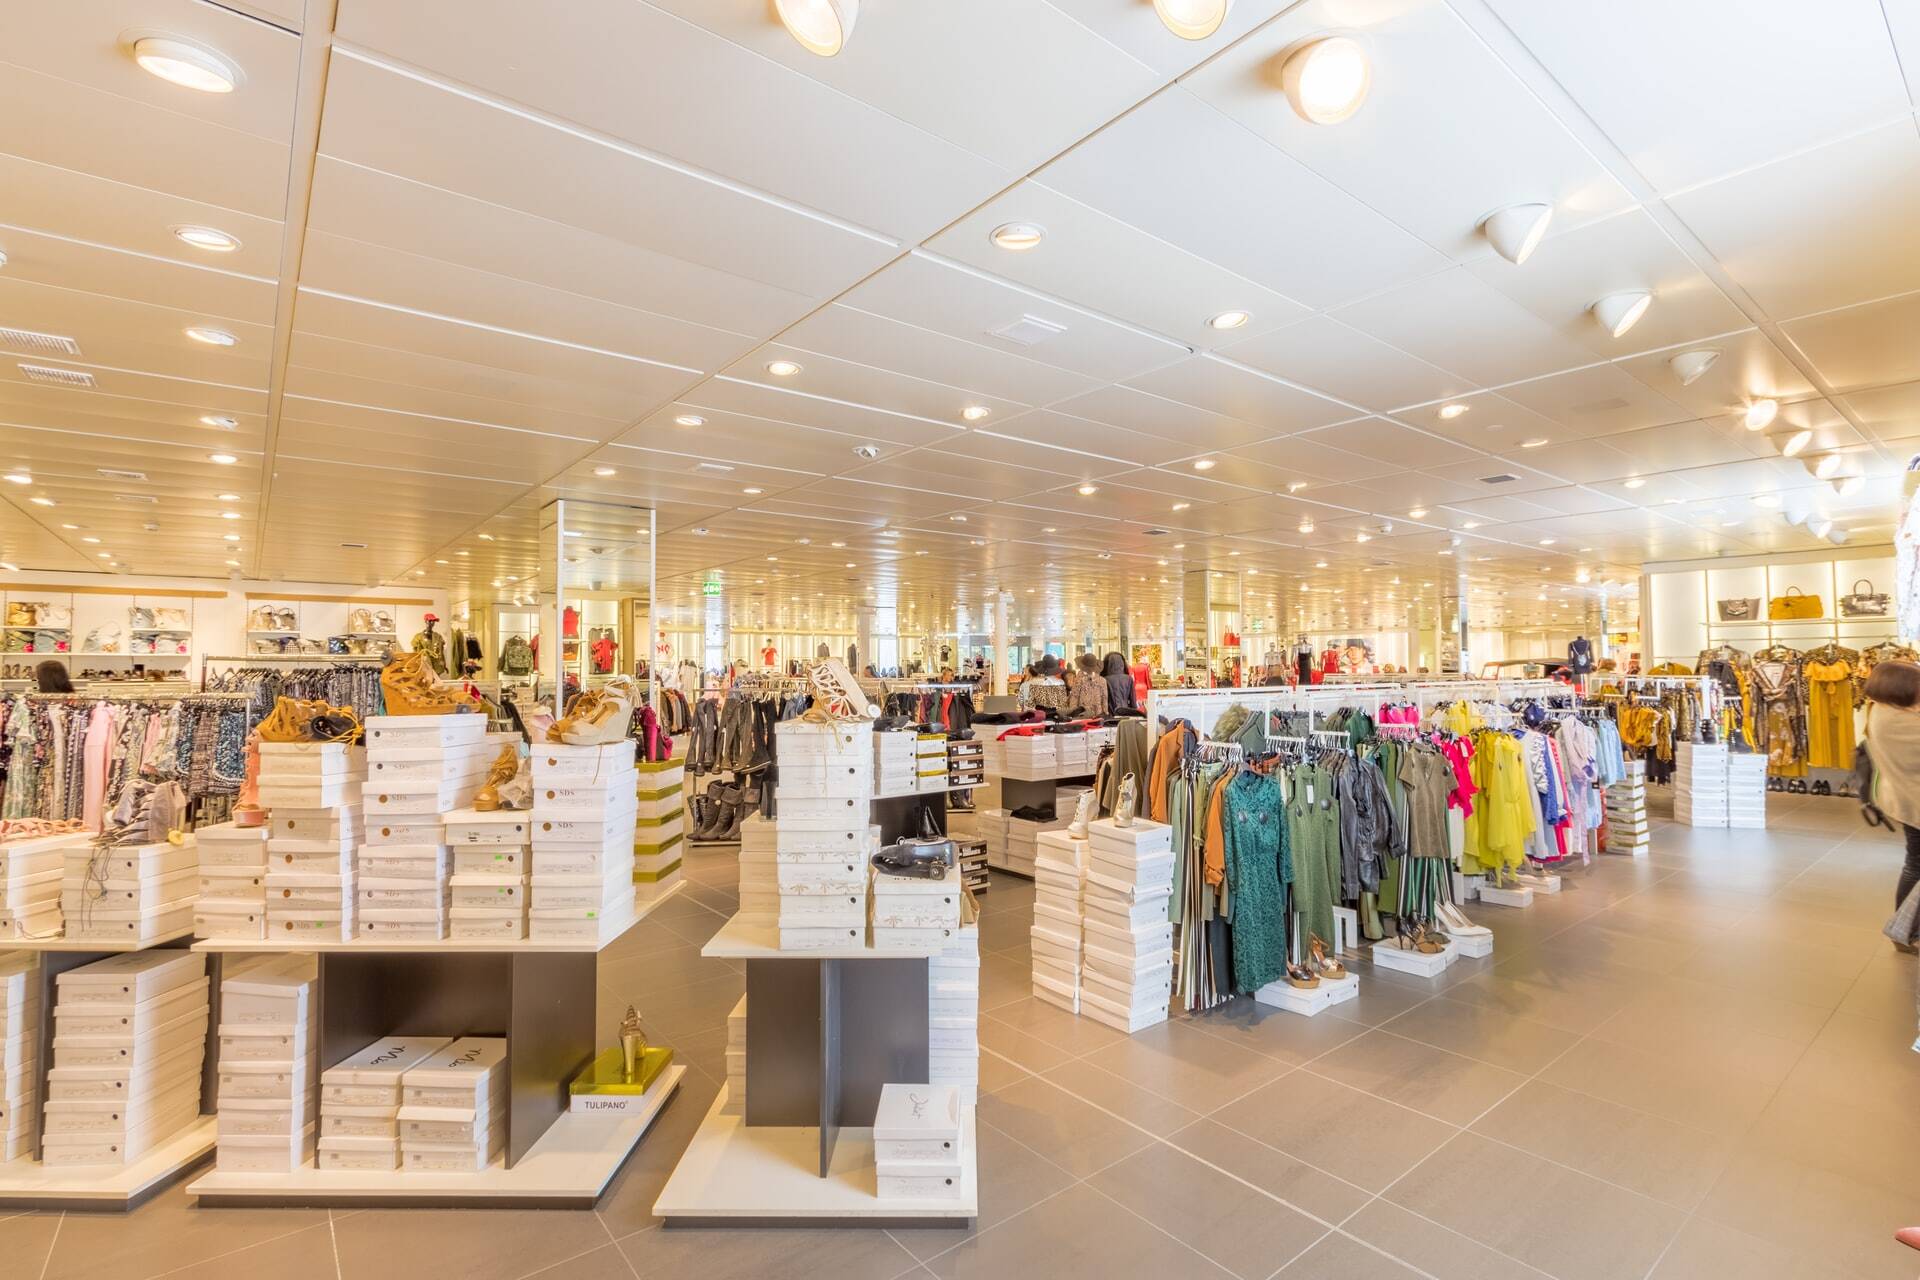 retail-en-e-commerce-vs-centros-comerciales-alt